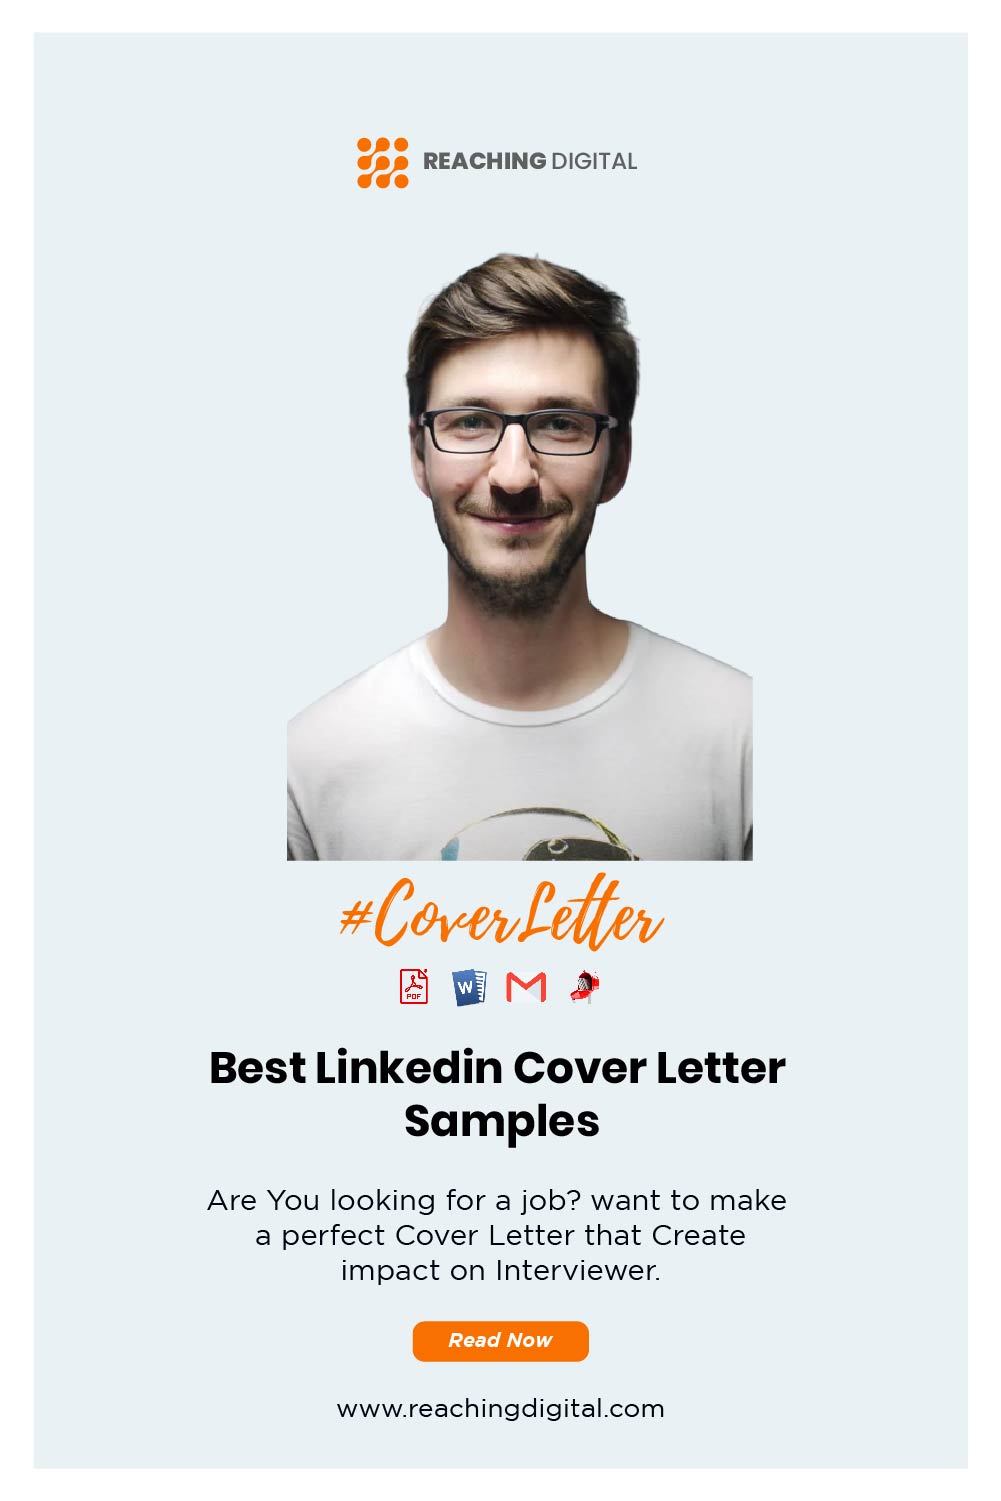 linkedin easy apply cover letter reddit